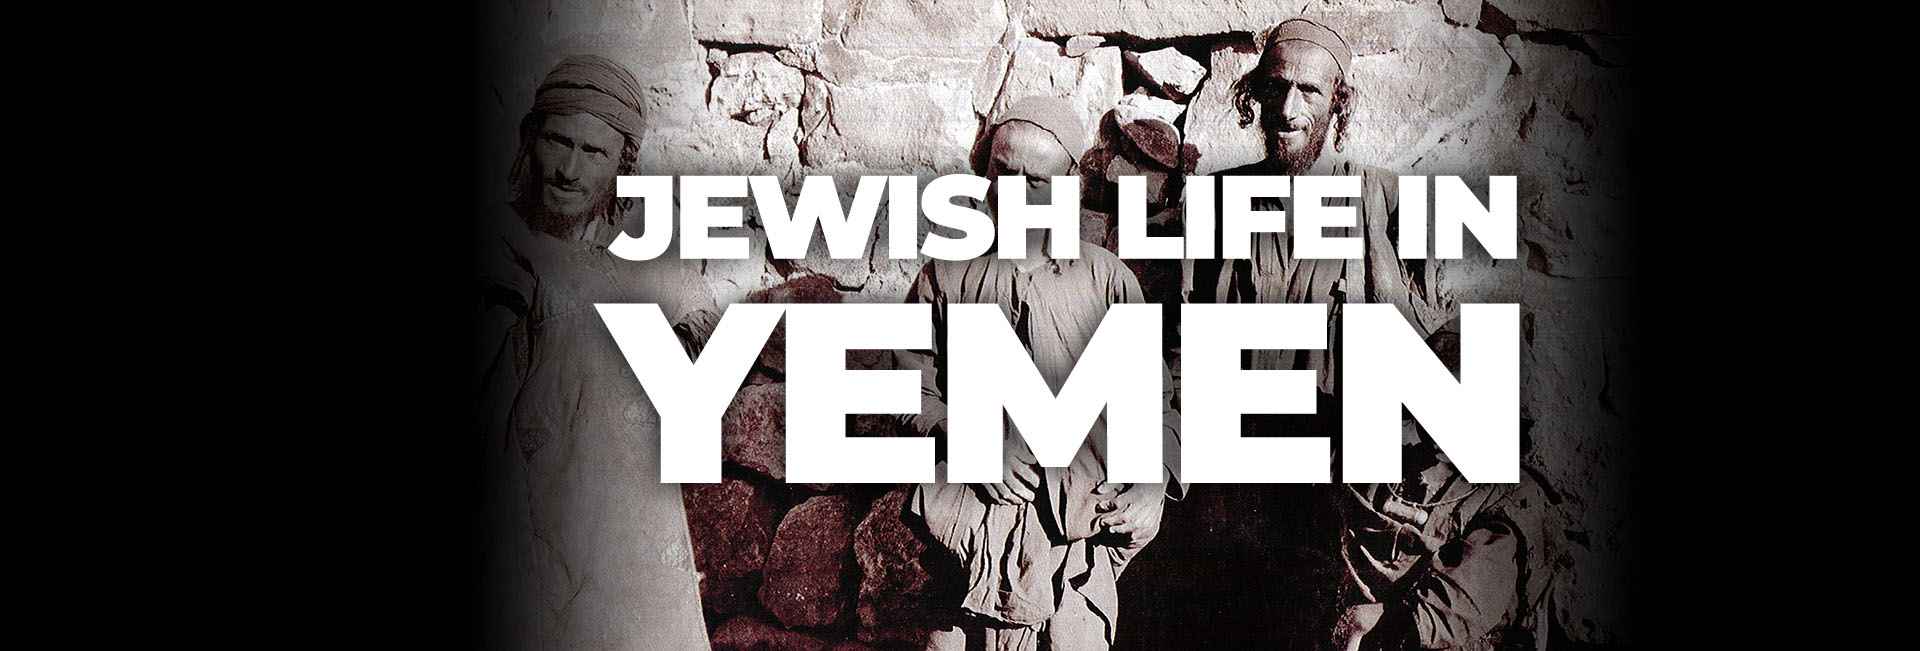 Jewish Life in Yemen